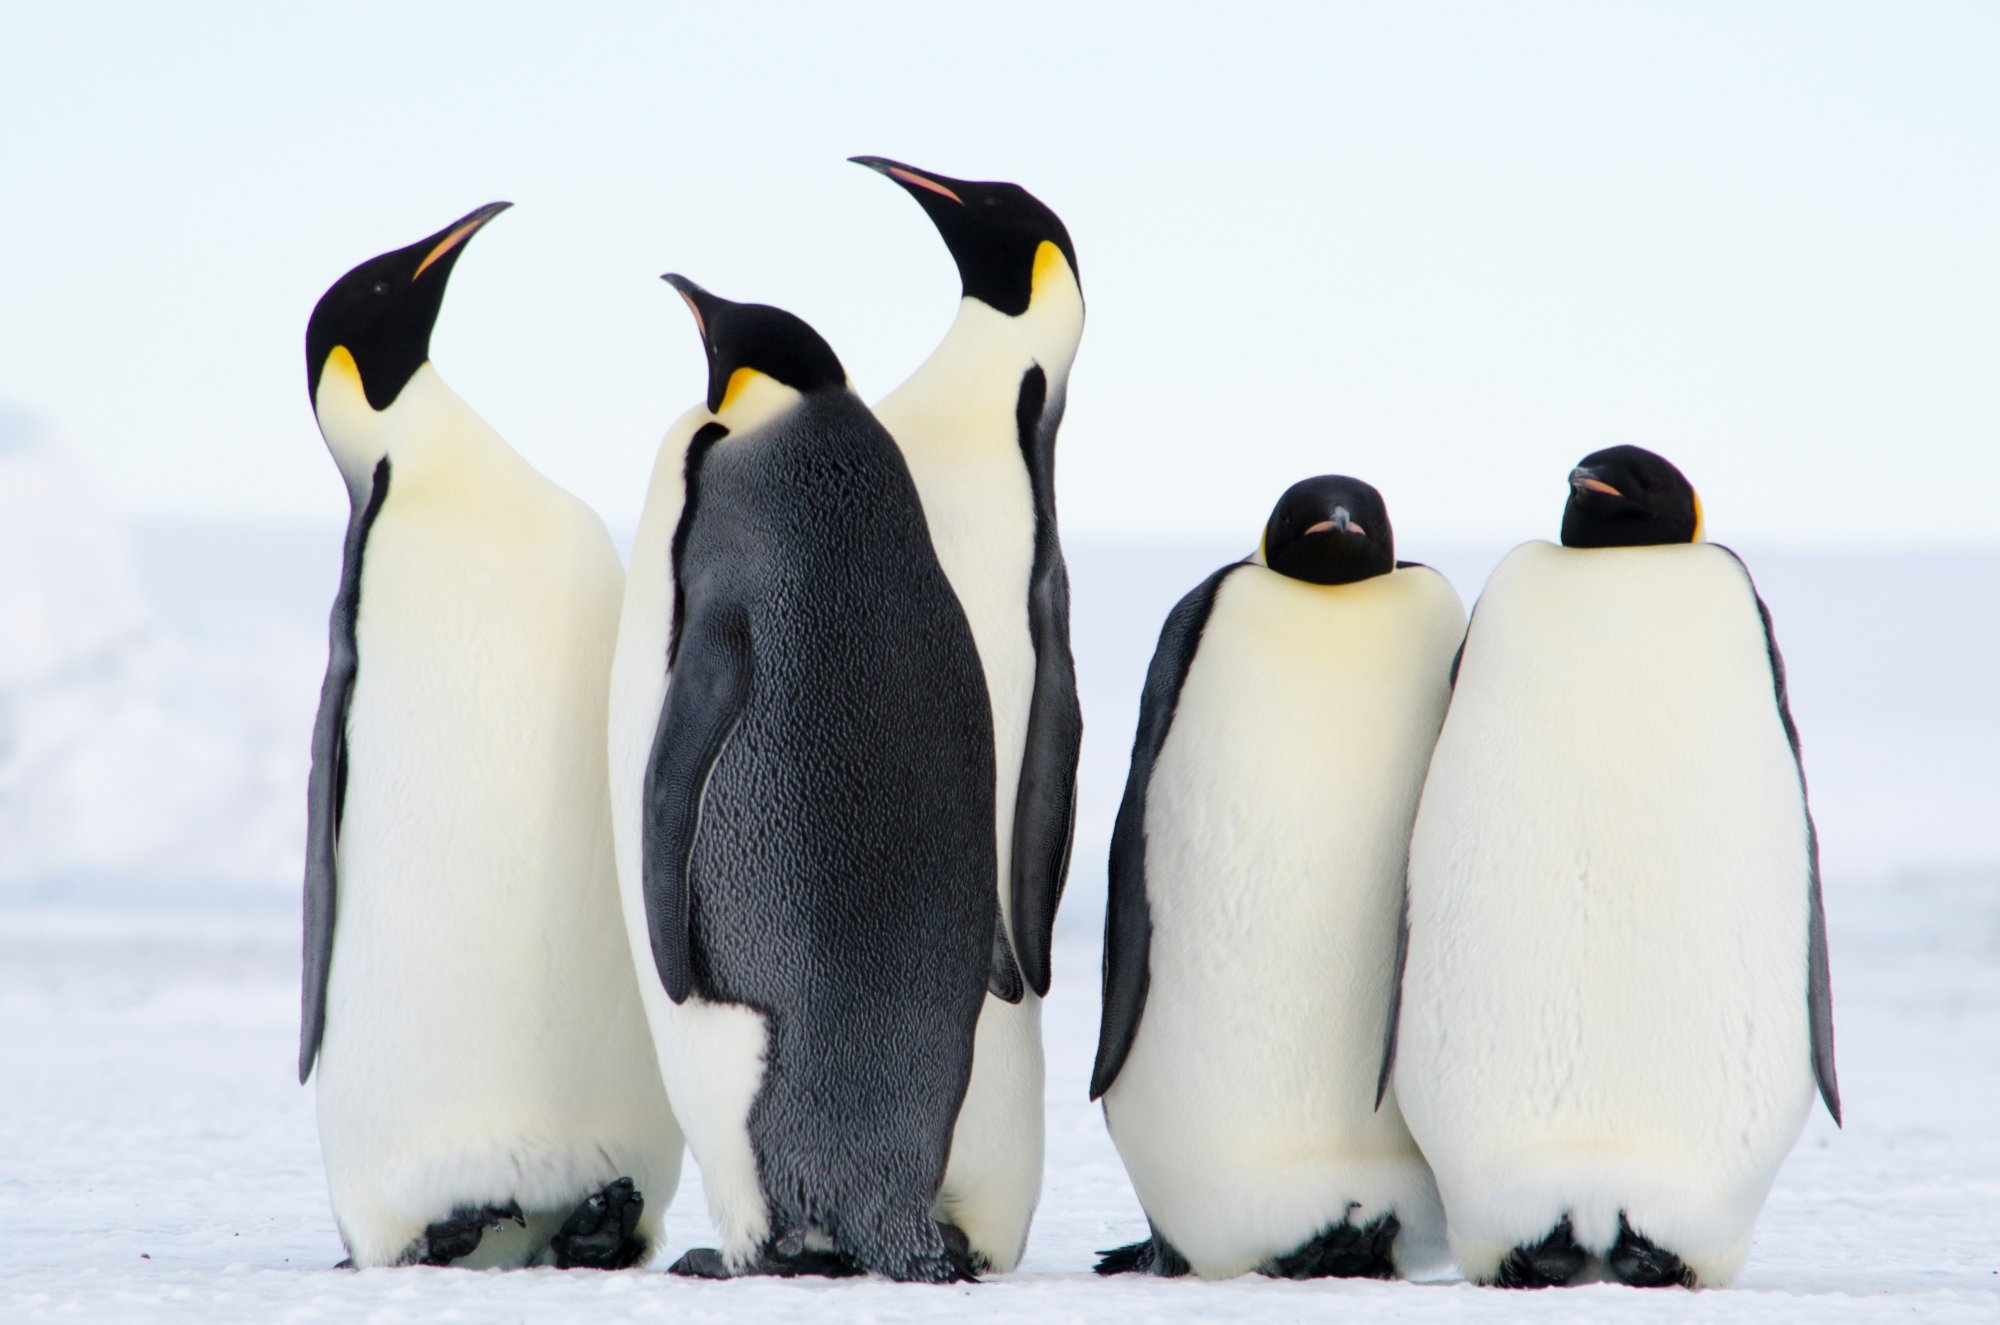 Αγνωστες αποικίες αυτοκρατορικών πιγκουίνων ανακαλύφθηκαν χάρη στις κουτσουλιές - ΤΑ ΝΕΑ